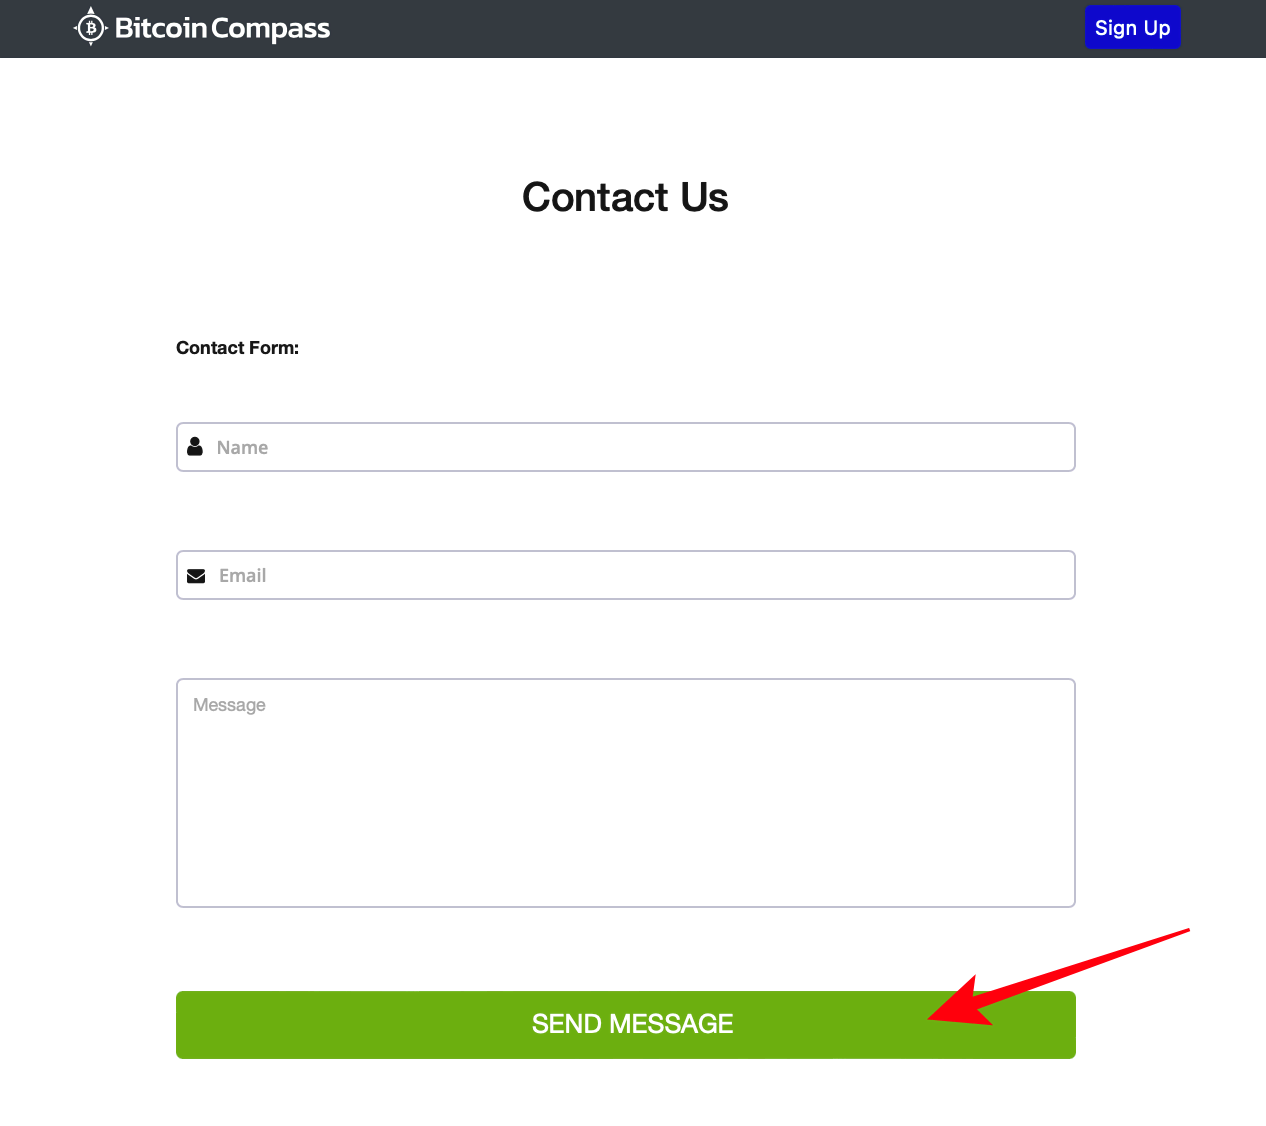 Contact opnemen met de klantenservice van Bitcoin Compass